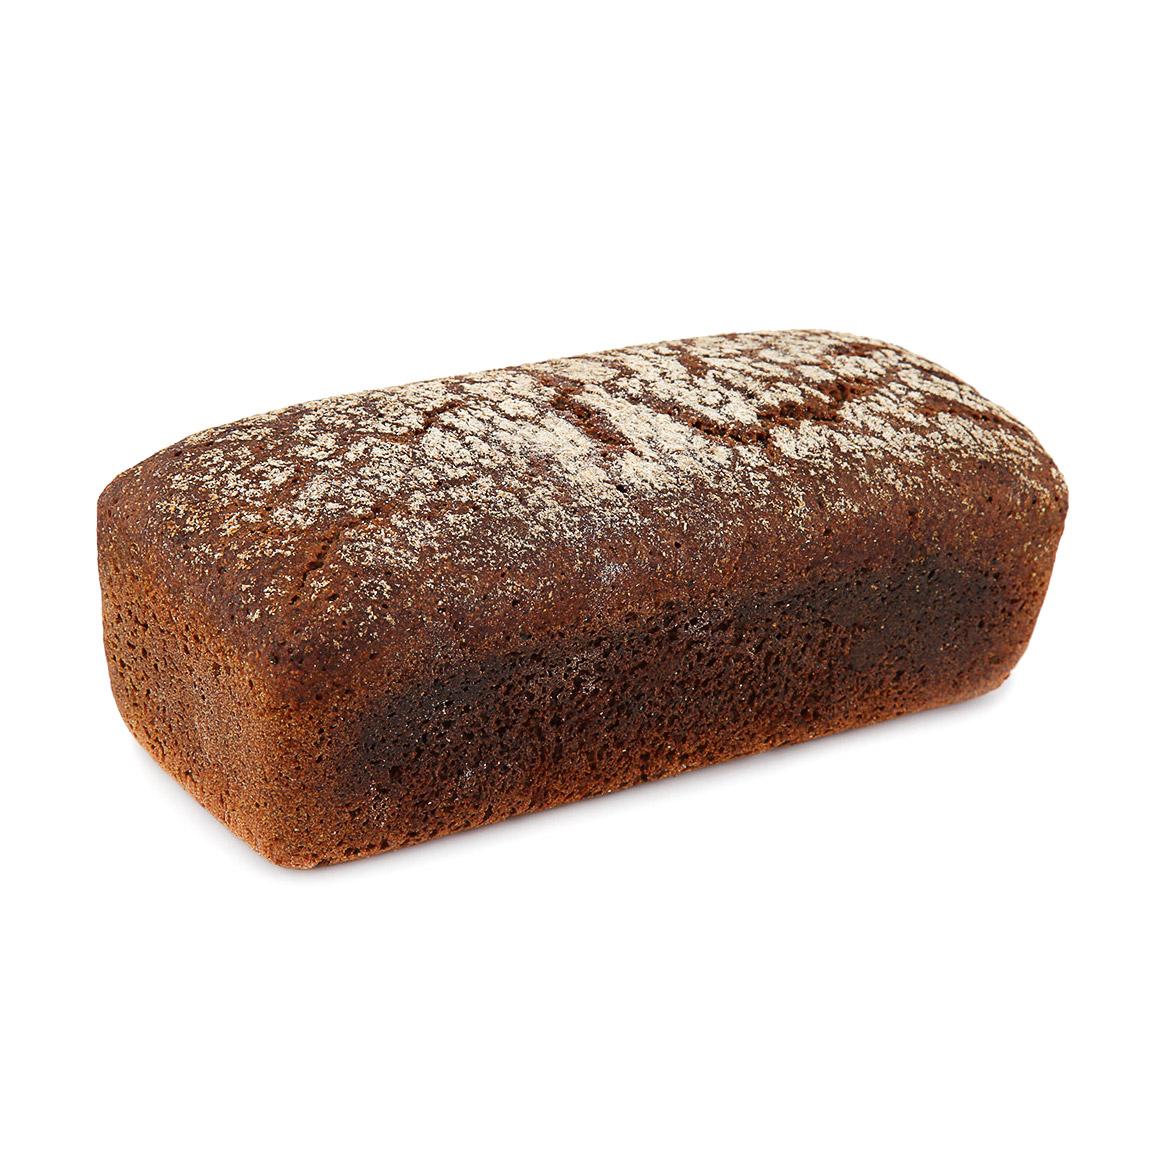 Хлеб Хлебъ Иван Давыдовъ Славянский формовой заварной ржано-пшеничный замороженный 420 г